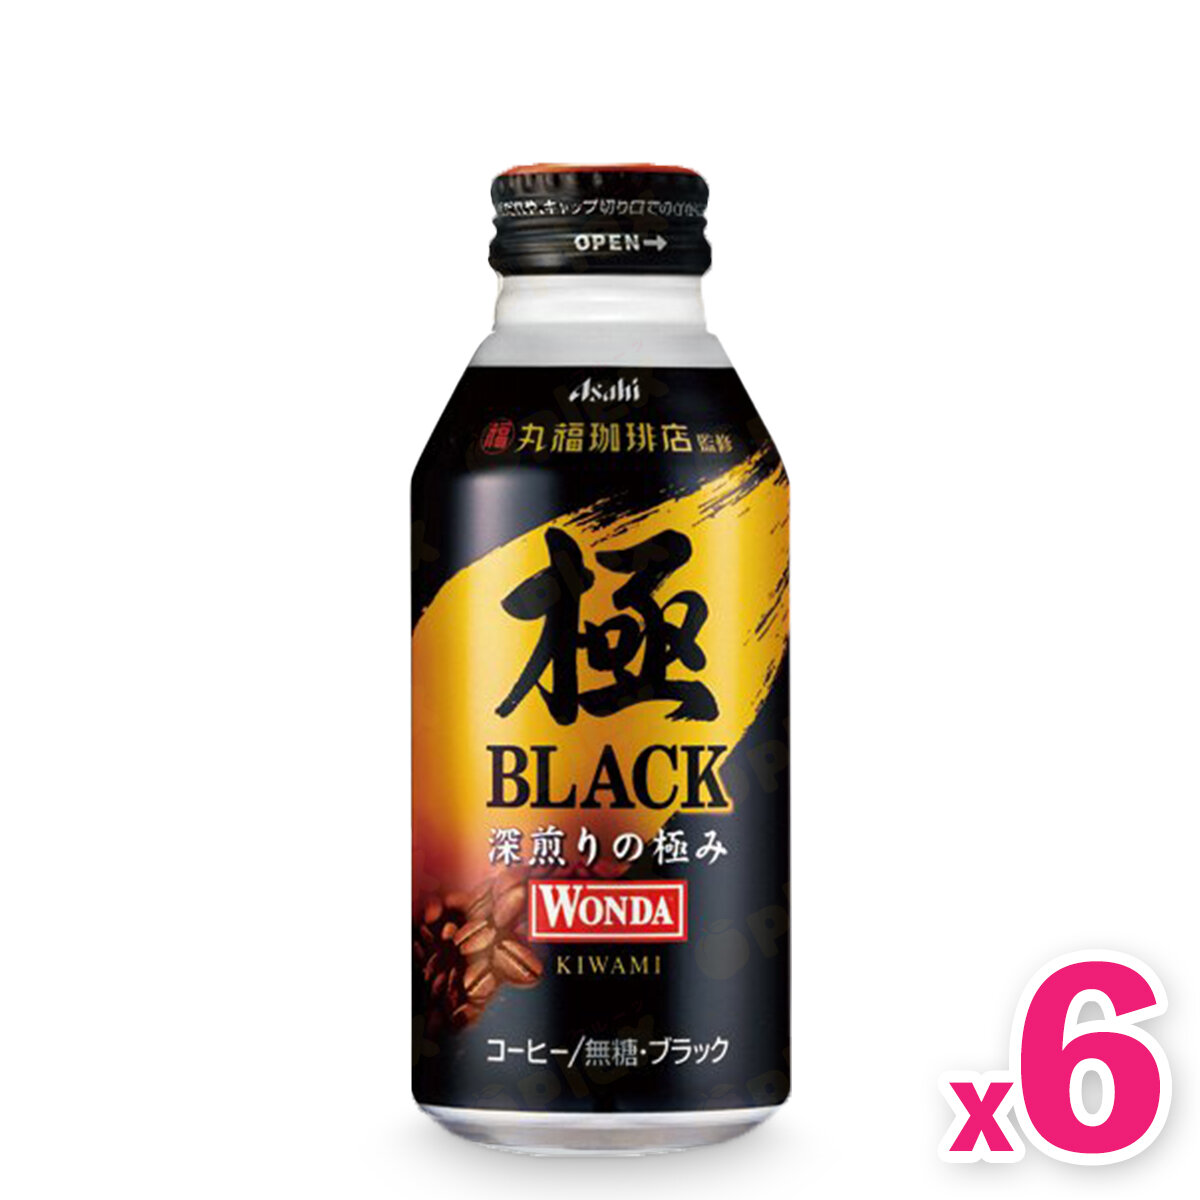 Japan Asahi [Wonda Kiwami] Black Coffee (400ml) x 6cans